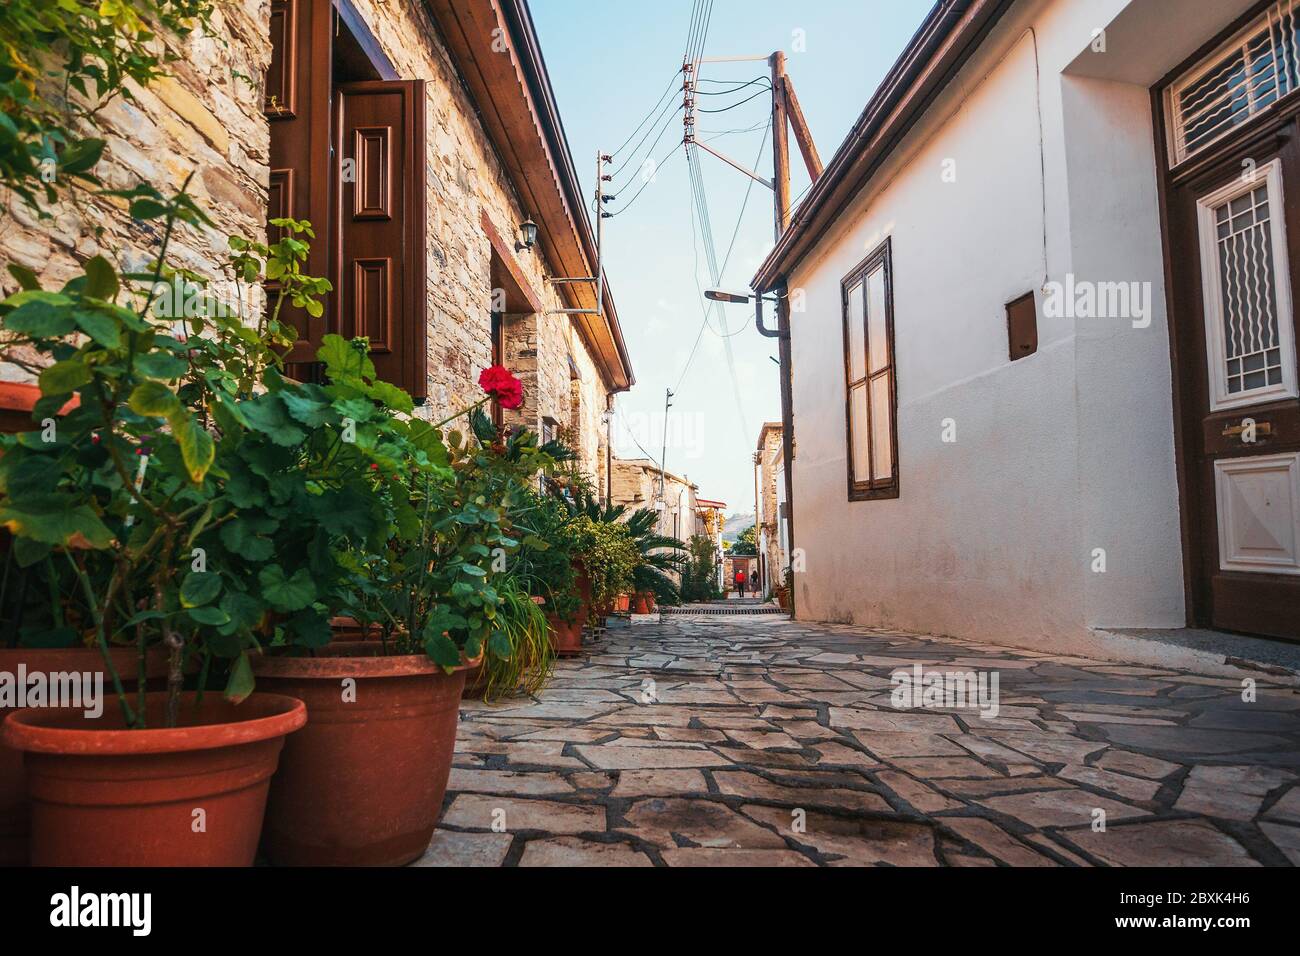 Lefkara villaggio con strade strette, situato in montagna, Cipro. Antico luogo turistico storico dell'isola. Foto Stock